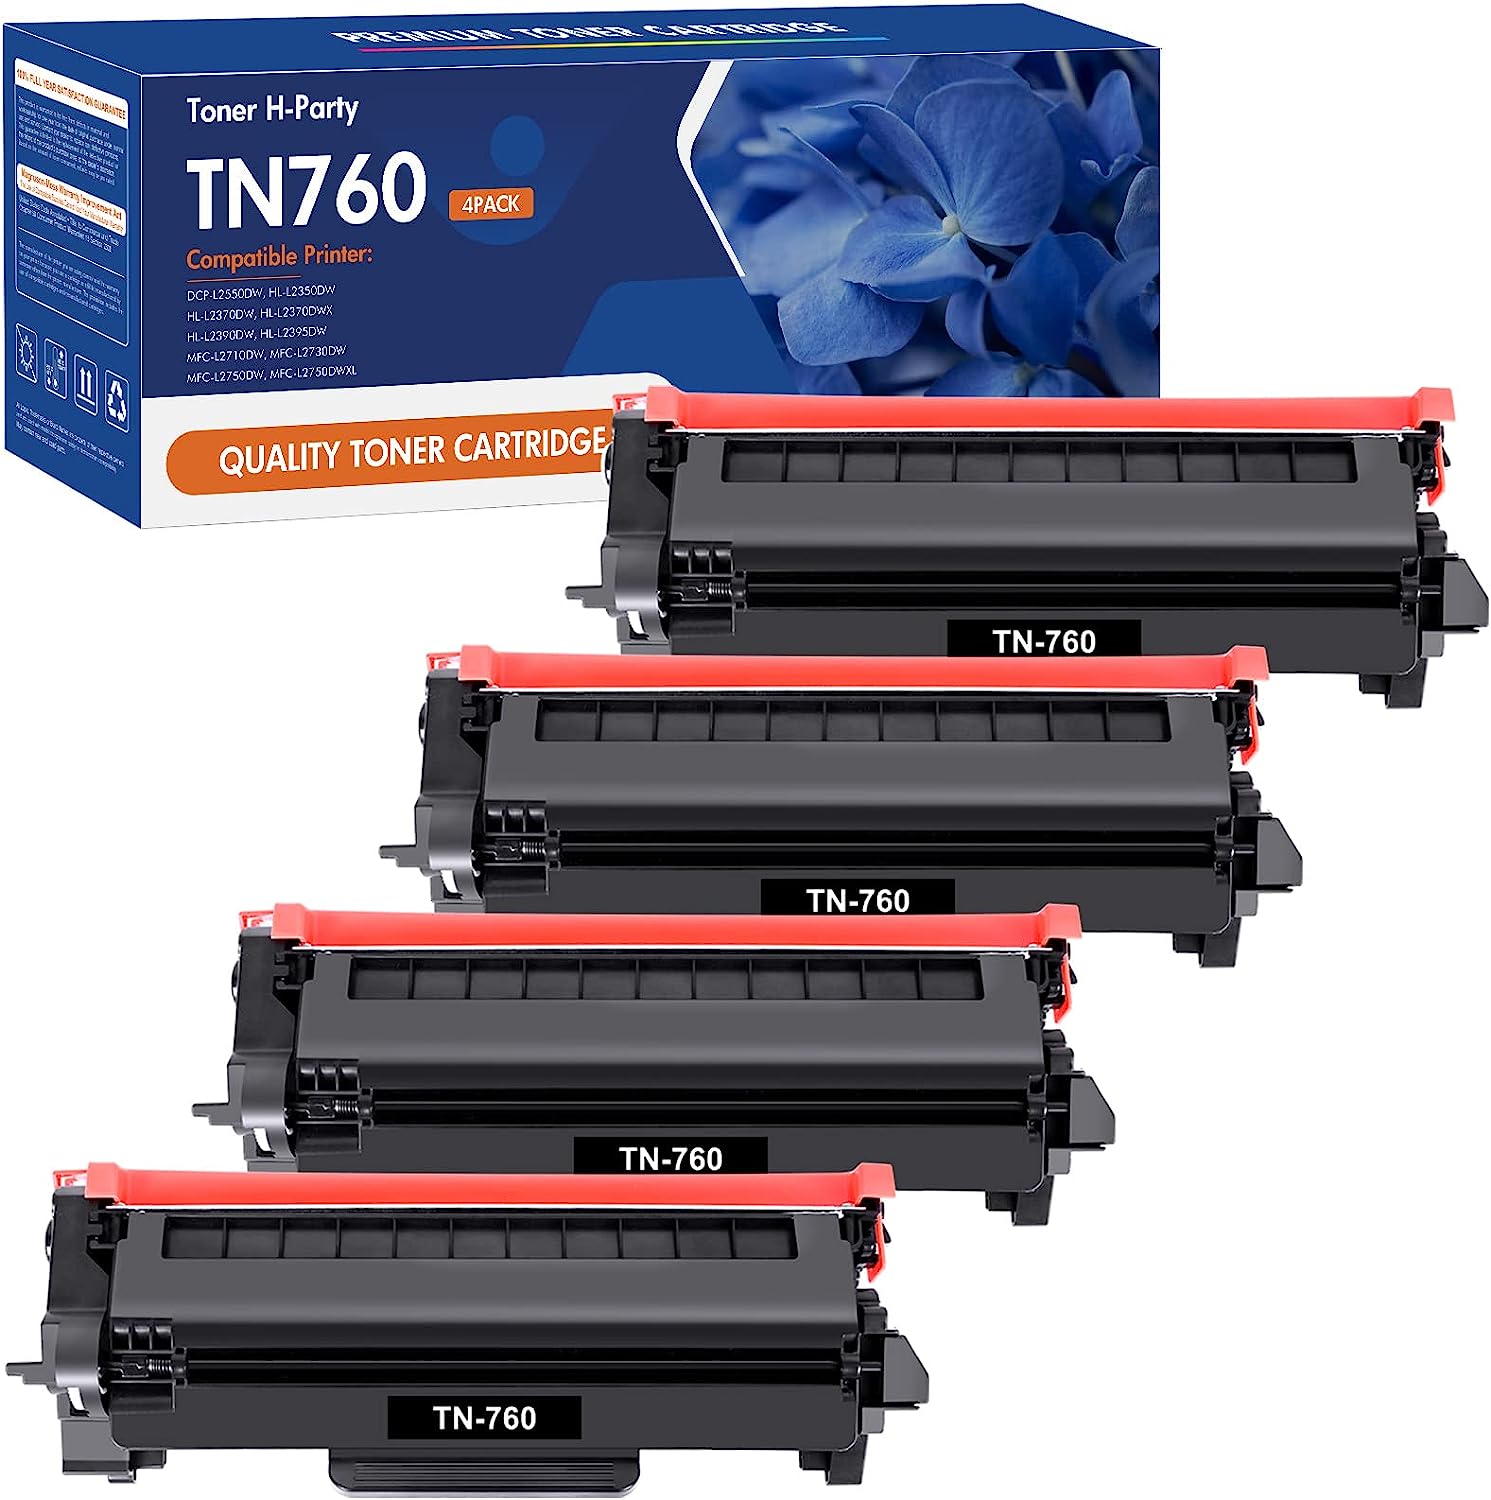 TN760 Toner for Brother Printer Toner TN-730/TN-760 [...]